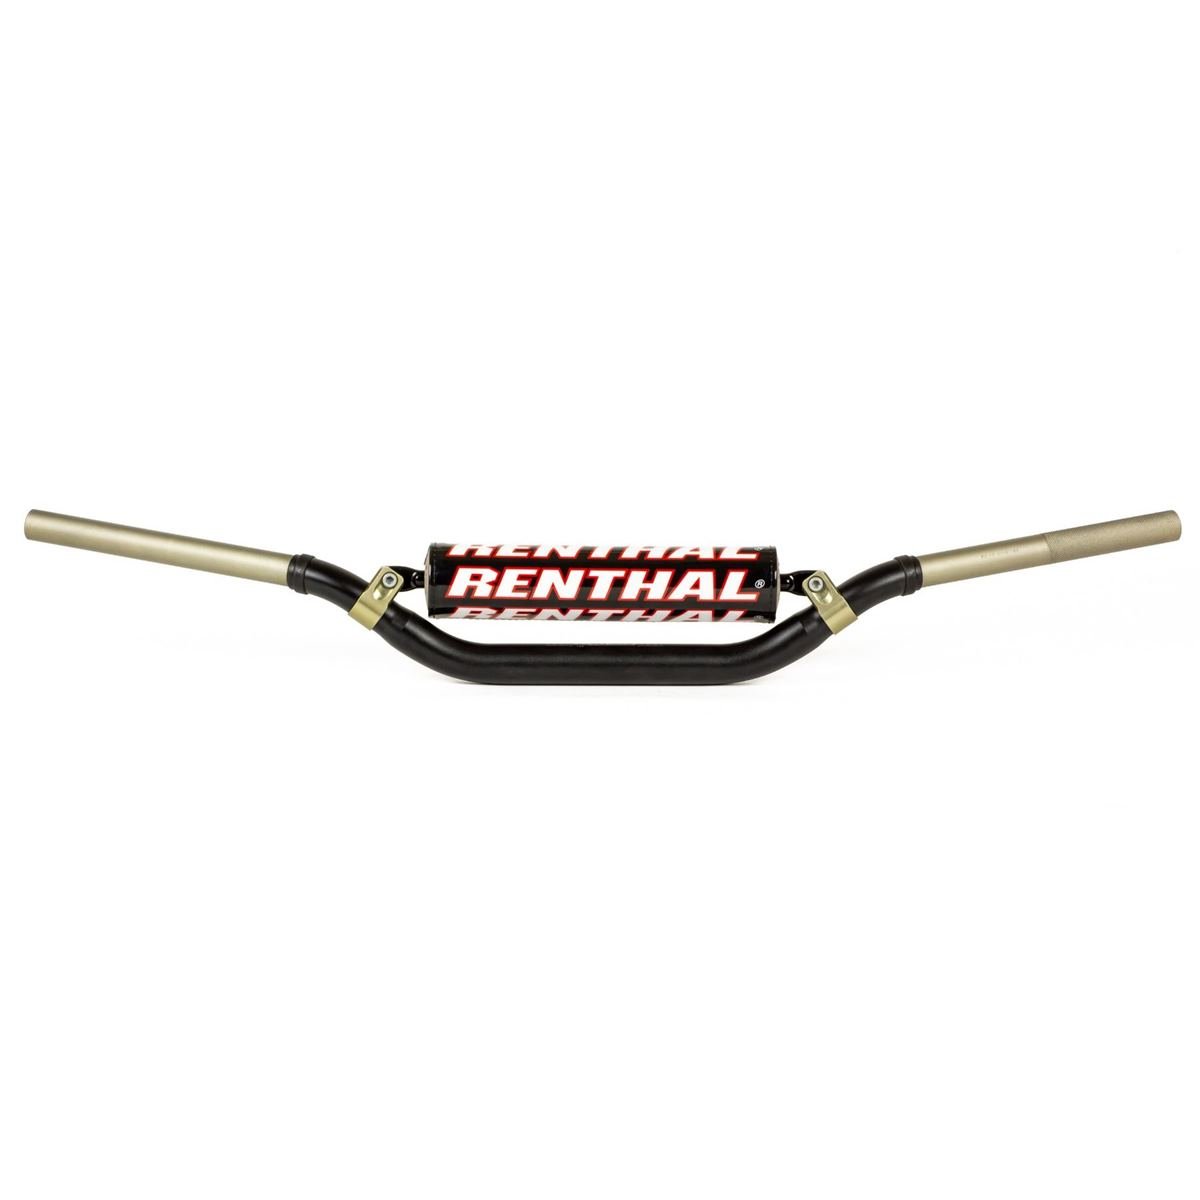 Renthal Manubrio Twinwall 990, 28.6 mm, YZ/YZ-F